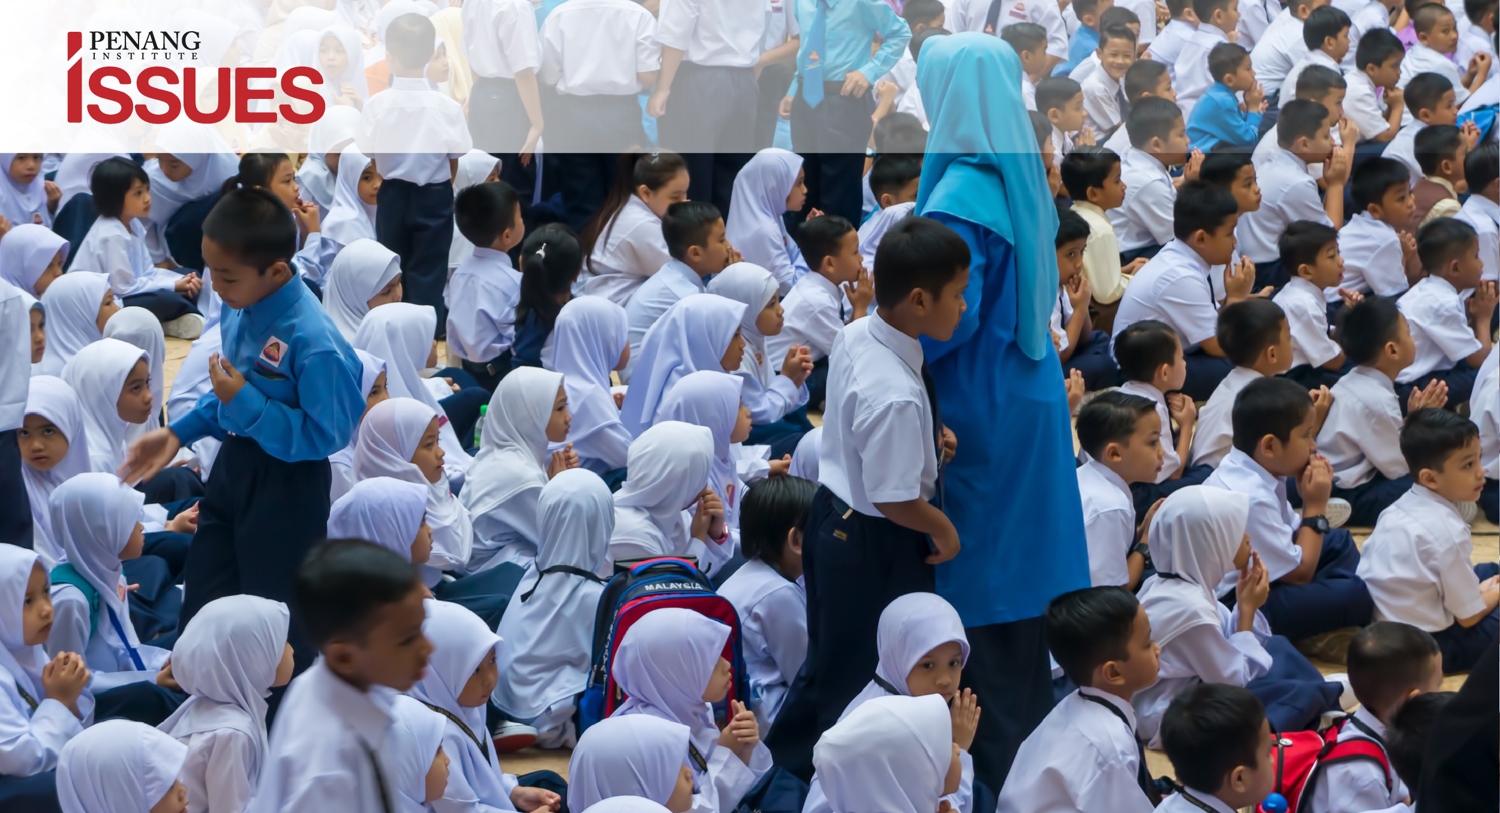 unity in malaysia essay